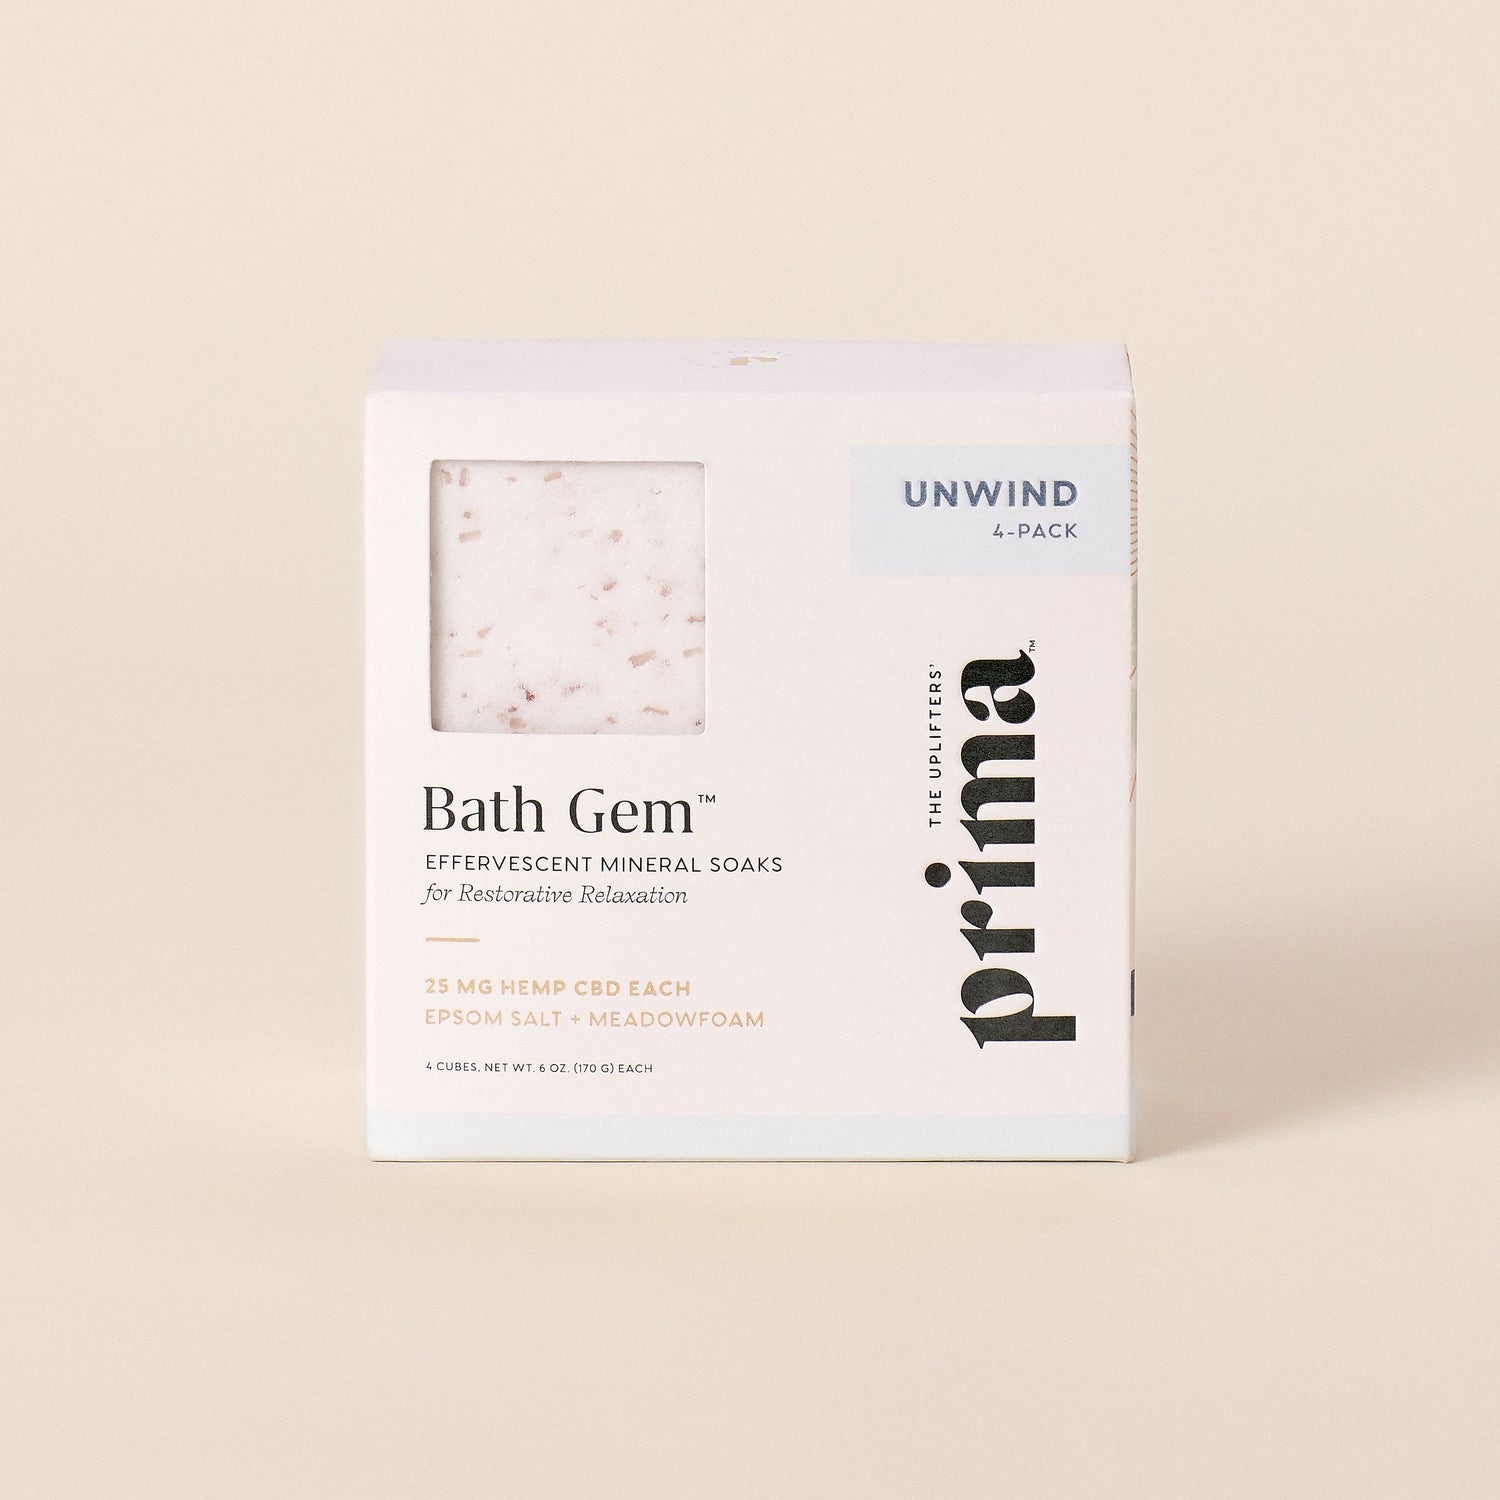 unwind bath gem 4-pack | bath bomb | Prima